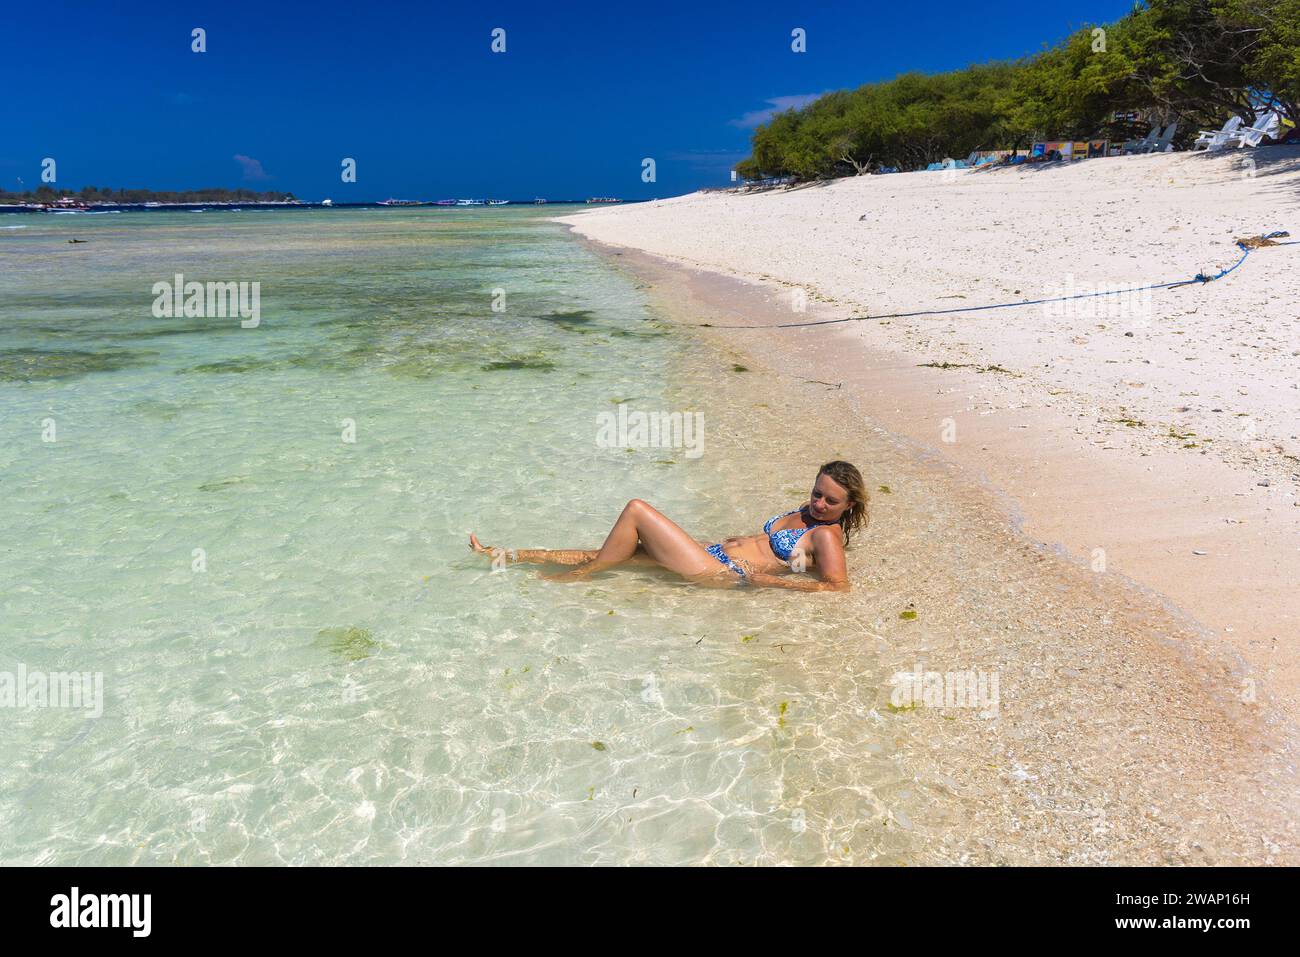 Una giovane donna in costume da bagno si trova nel mare poco profondo di una spiaggia di sabbia a Gili meno, Indonesia Foto Stock